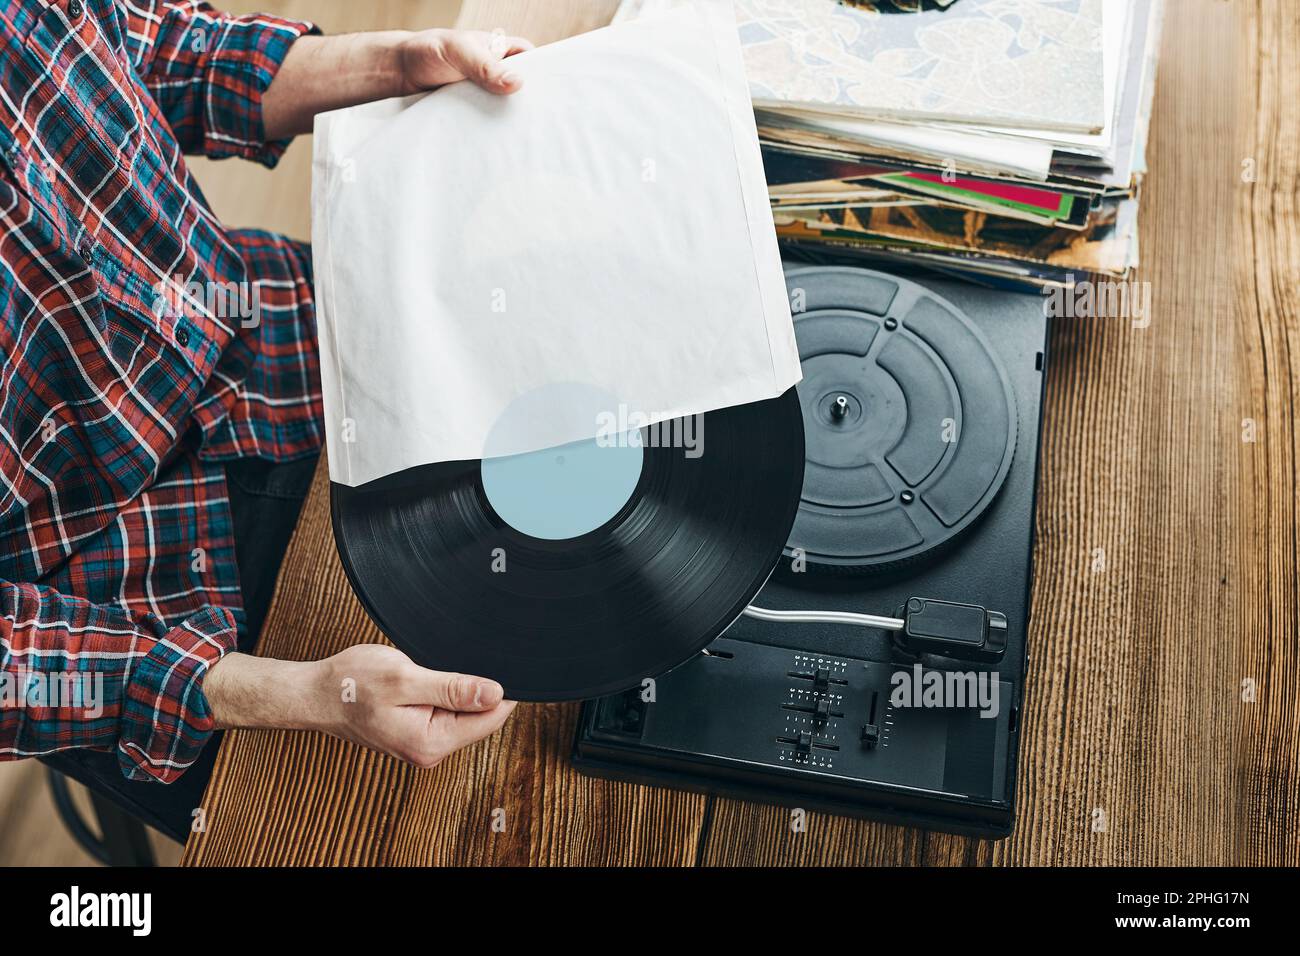 Homme écoutant de la musique à partir d'un disque vinyle. Lecture de musique à partir d'un disque analogique sur le lecteur de platine. Écouter de la musique de l'ancienne collection. Détente à la maison. Réf Banque D'Images